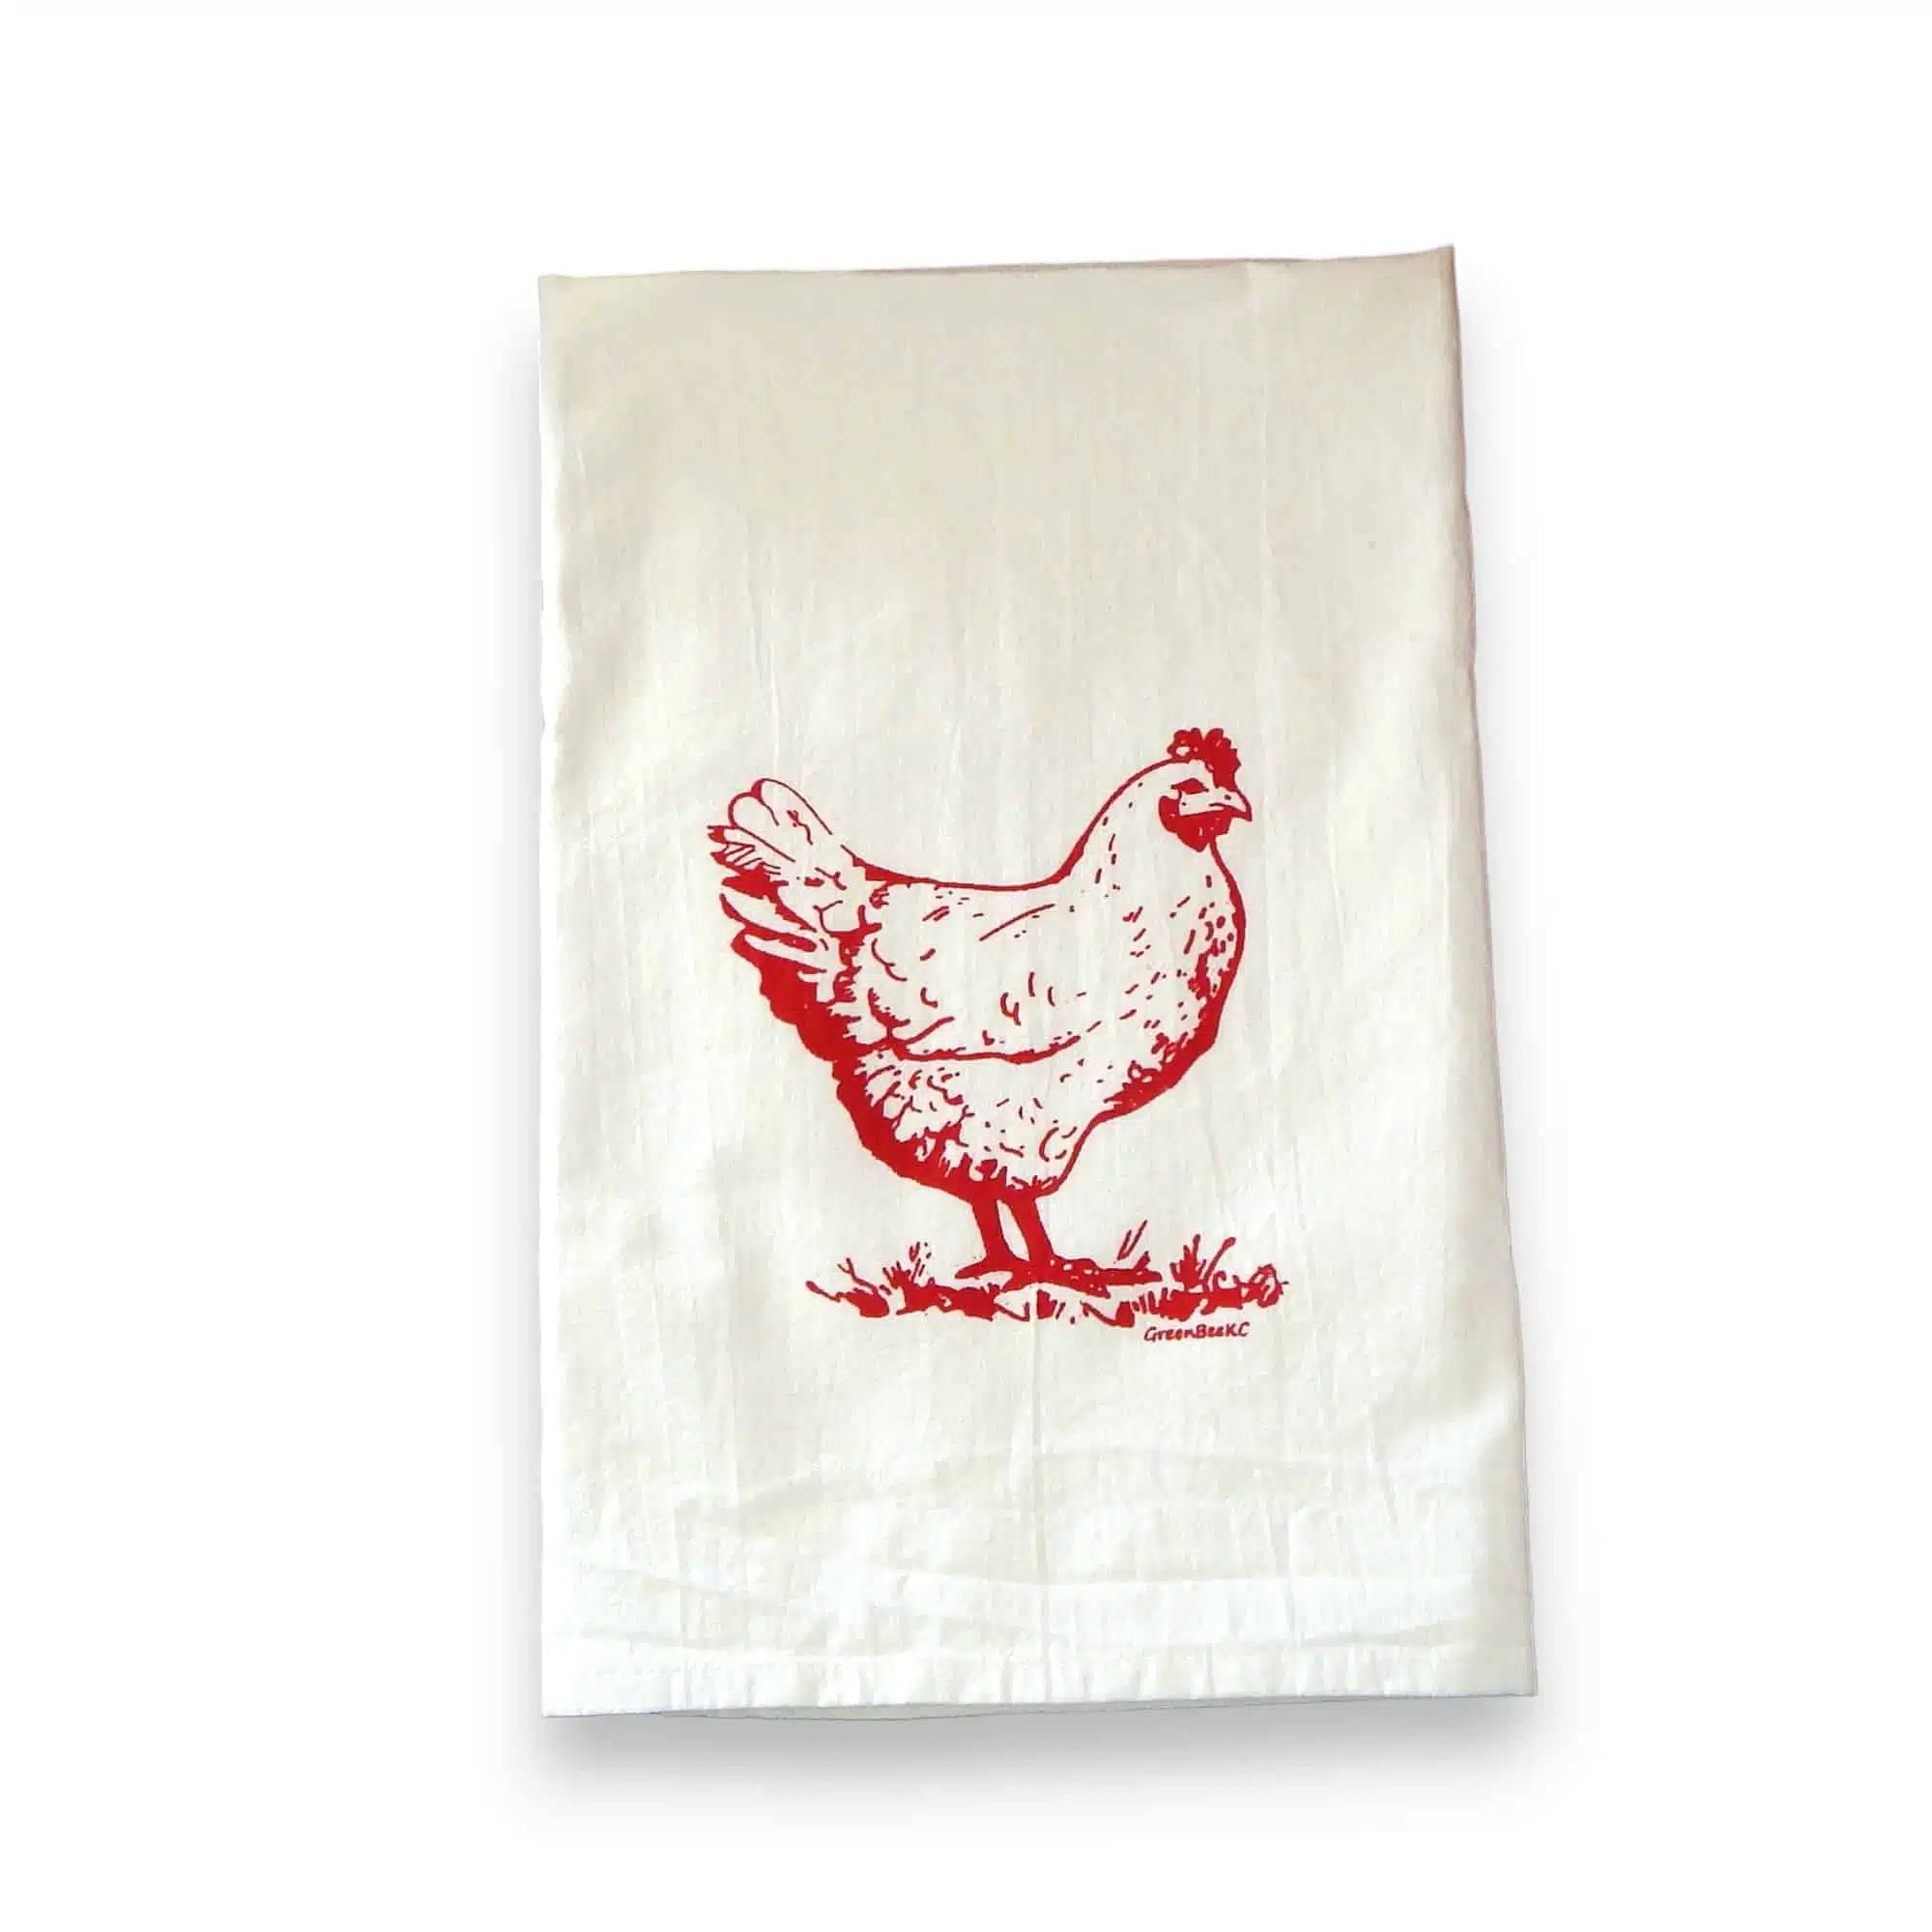 Hen chicken kitchen tea towel